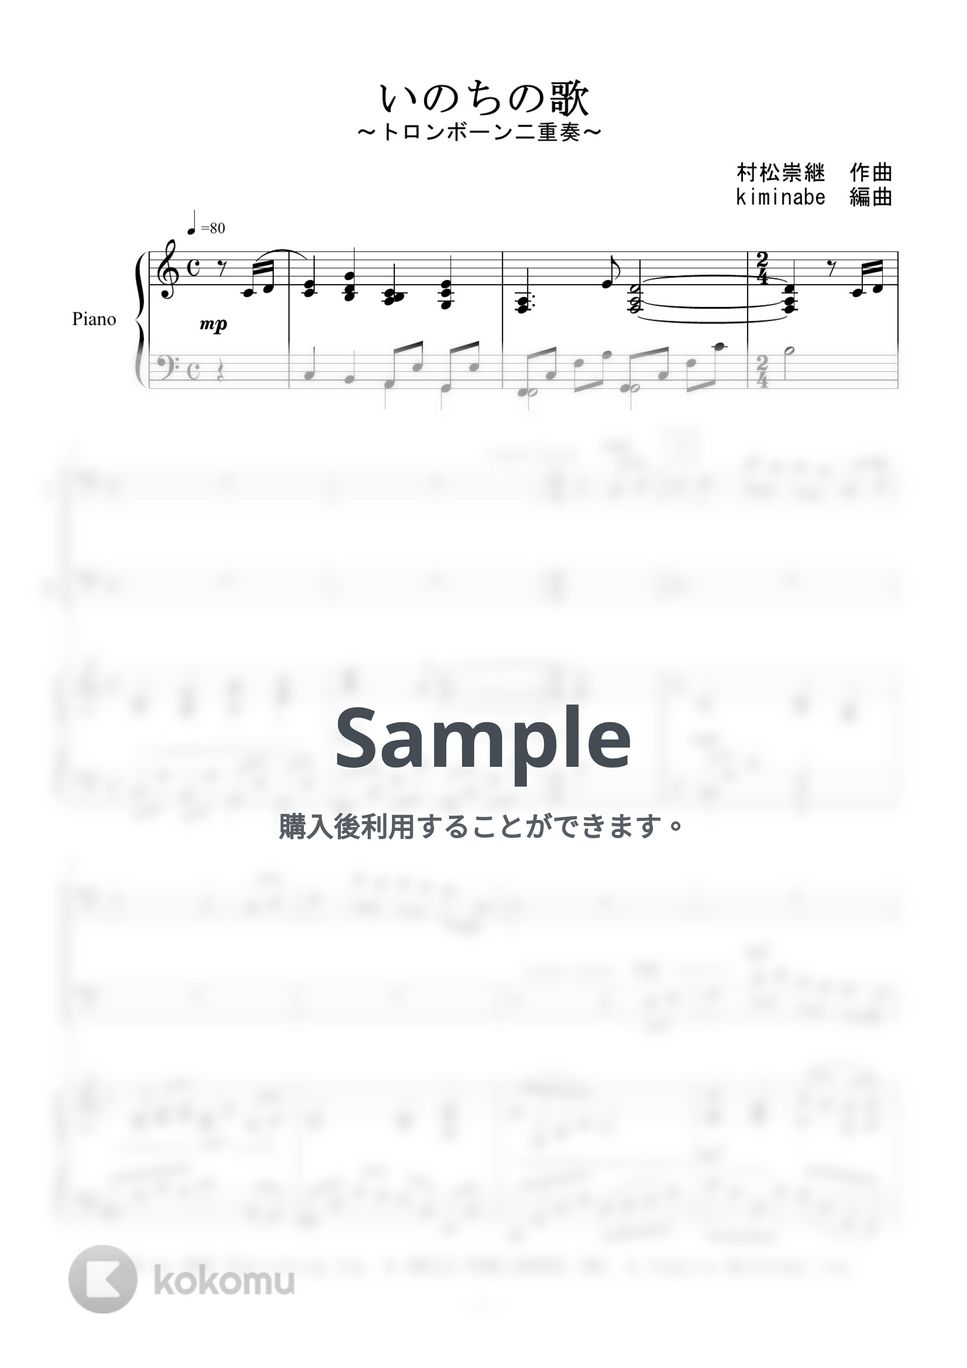 竹内まりや - いのちの歌 (トロンボーン二重奏) by kiminabe